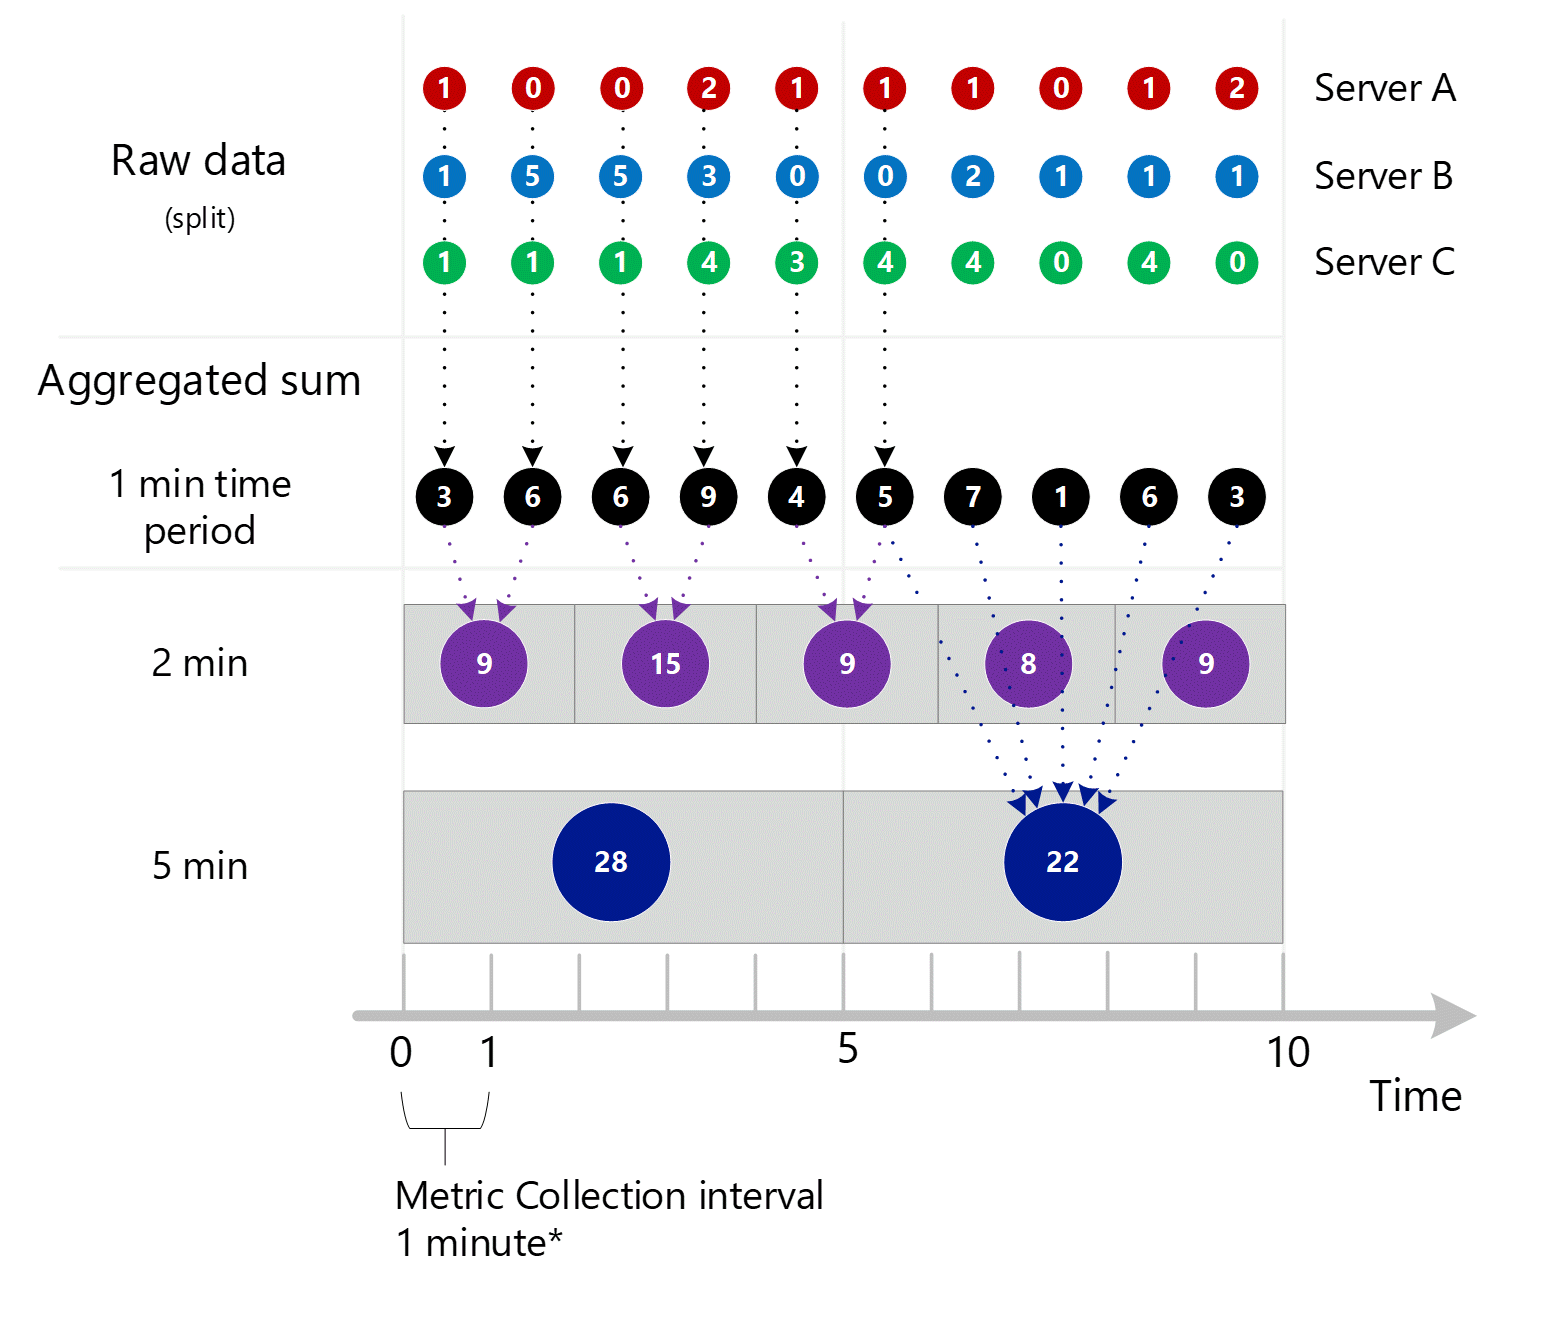 Captura de pantalla que muestra la consolidación de las tres capturas de pantalla anteriores. Varias entradas agregadas de 1 minuto en la dimensión del servidor agregado en intervalos de 1, 2 y 5 minutos. Los servidores A, B y C se muestran individualmente.